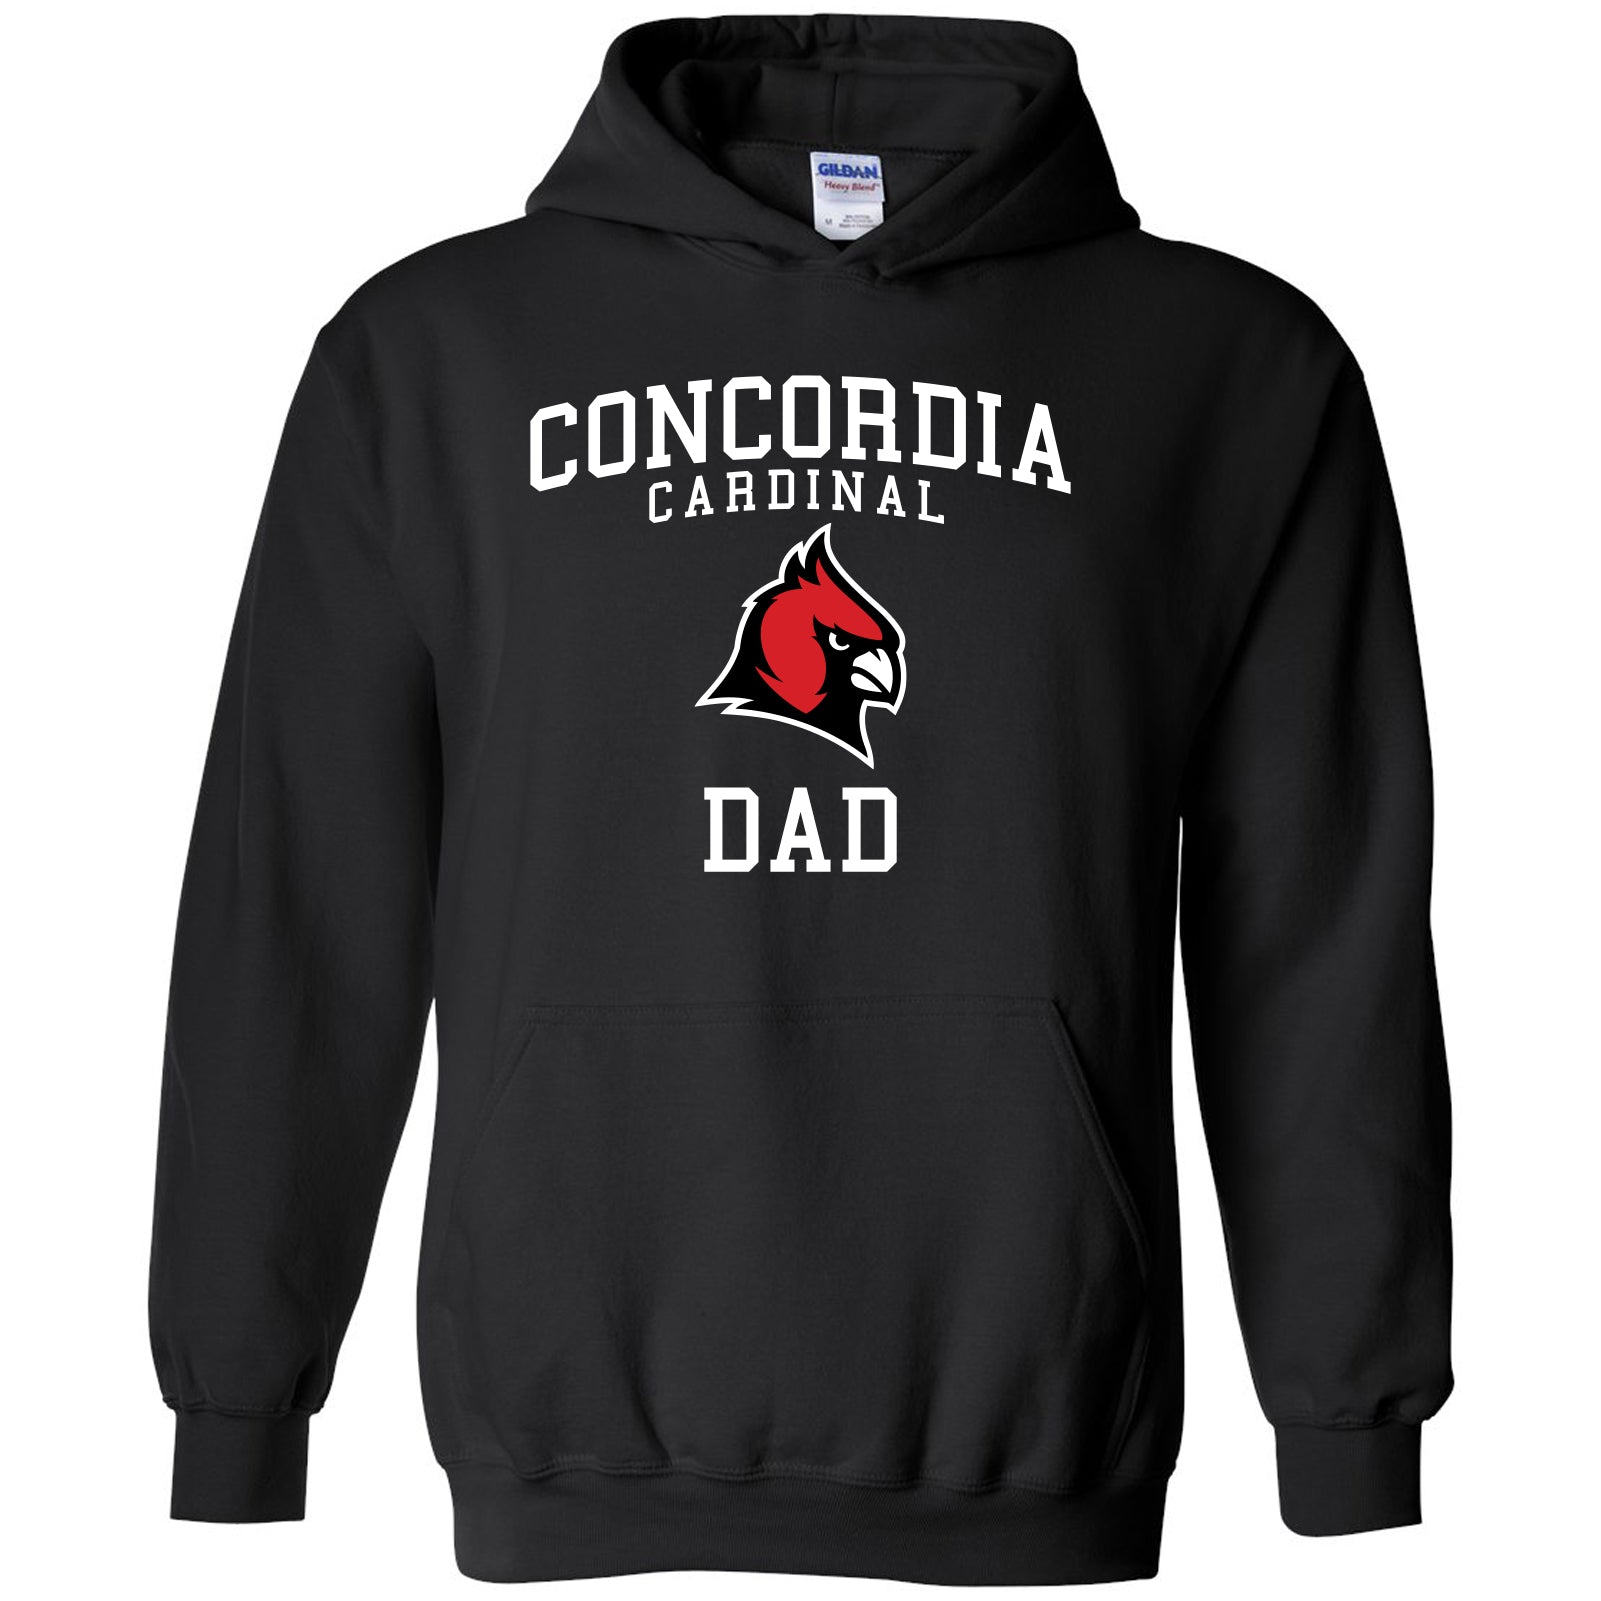 Concordia Cardinal Dad Hooded Sweatshirt - Black